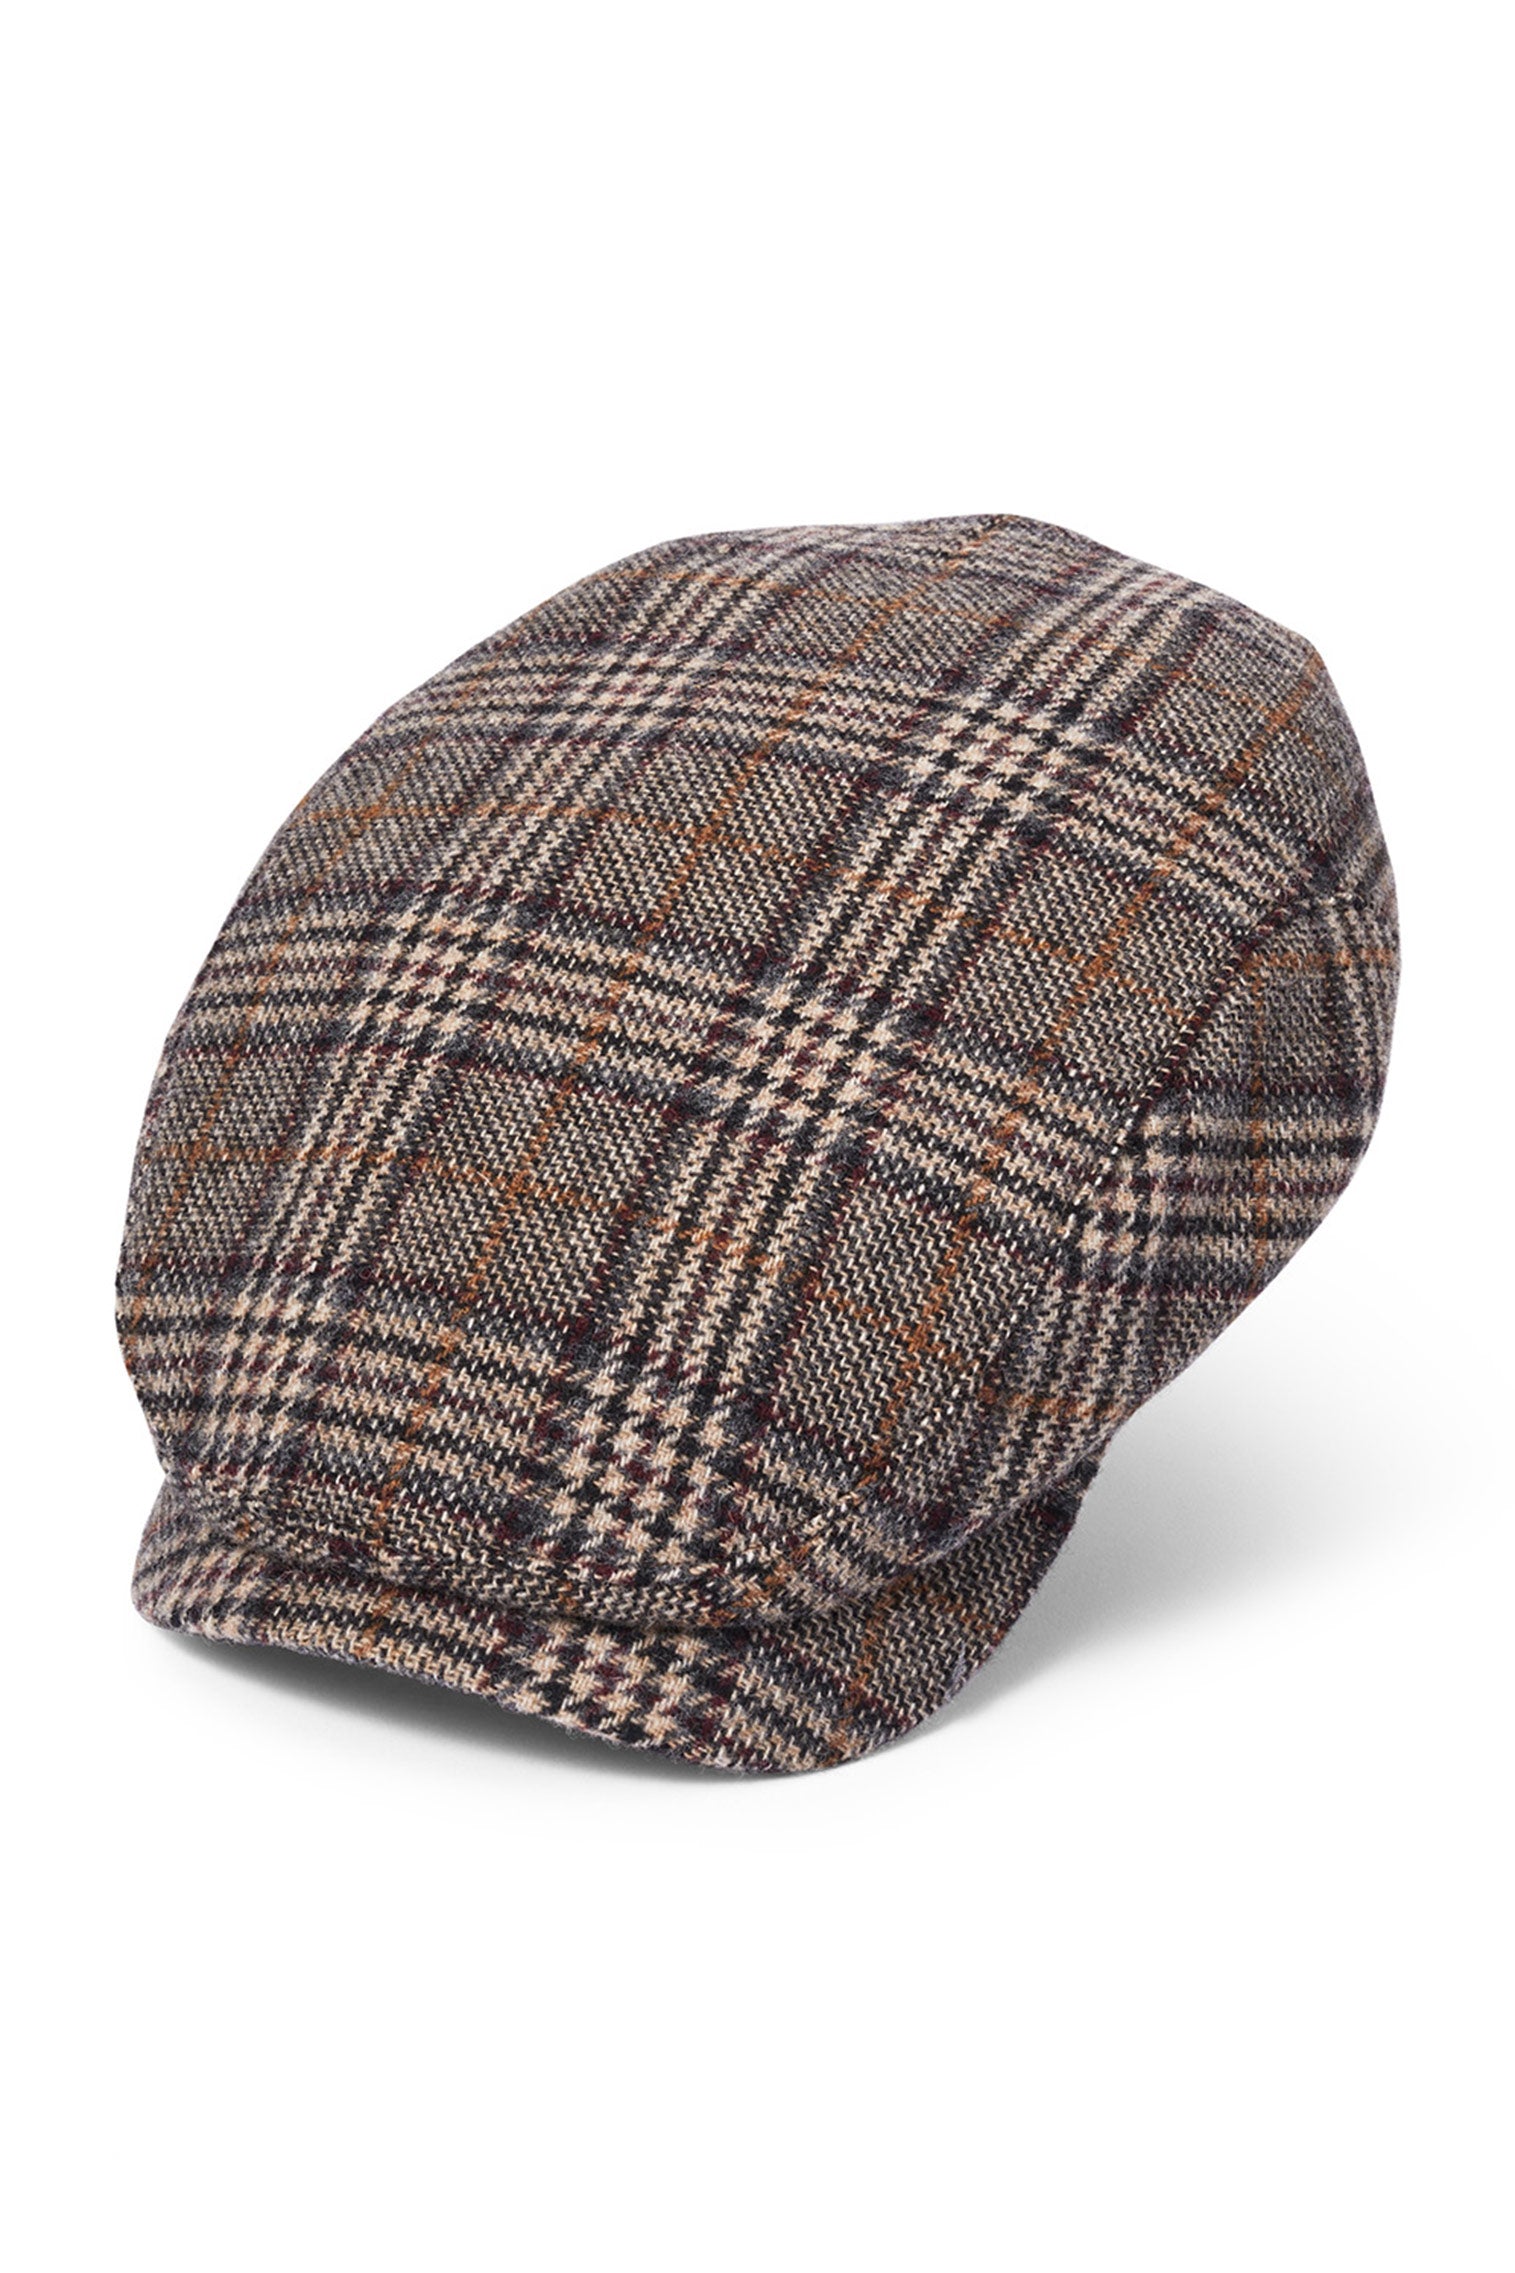 Lynton Grey Flat Cap - All Ready to Wear - Lock & Co. Hatters London UK